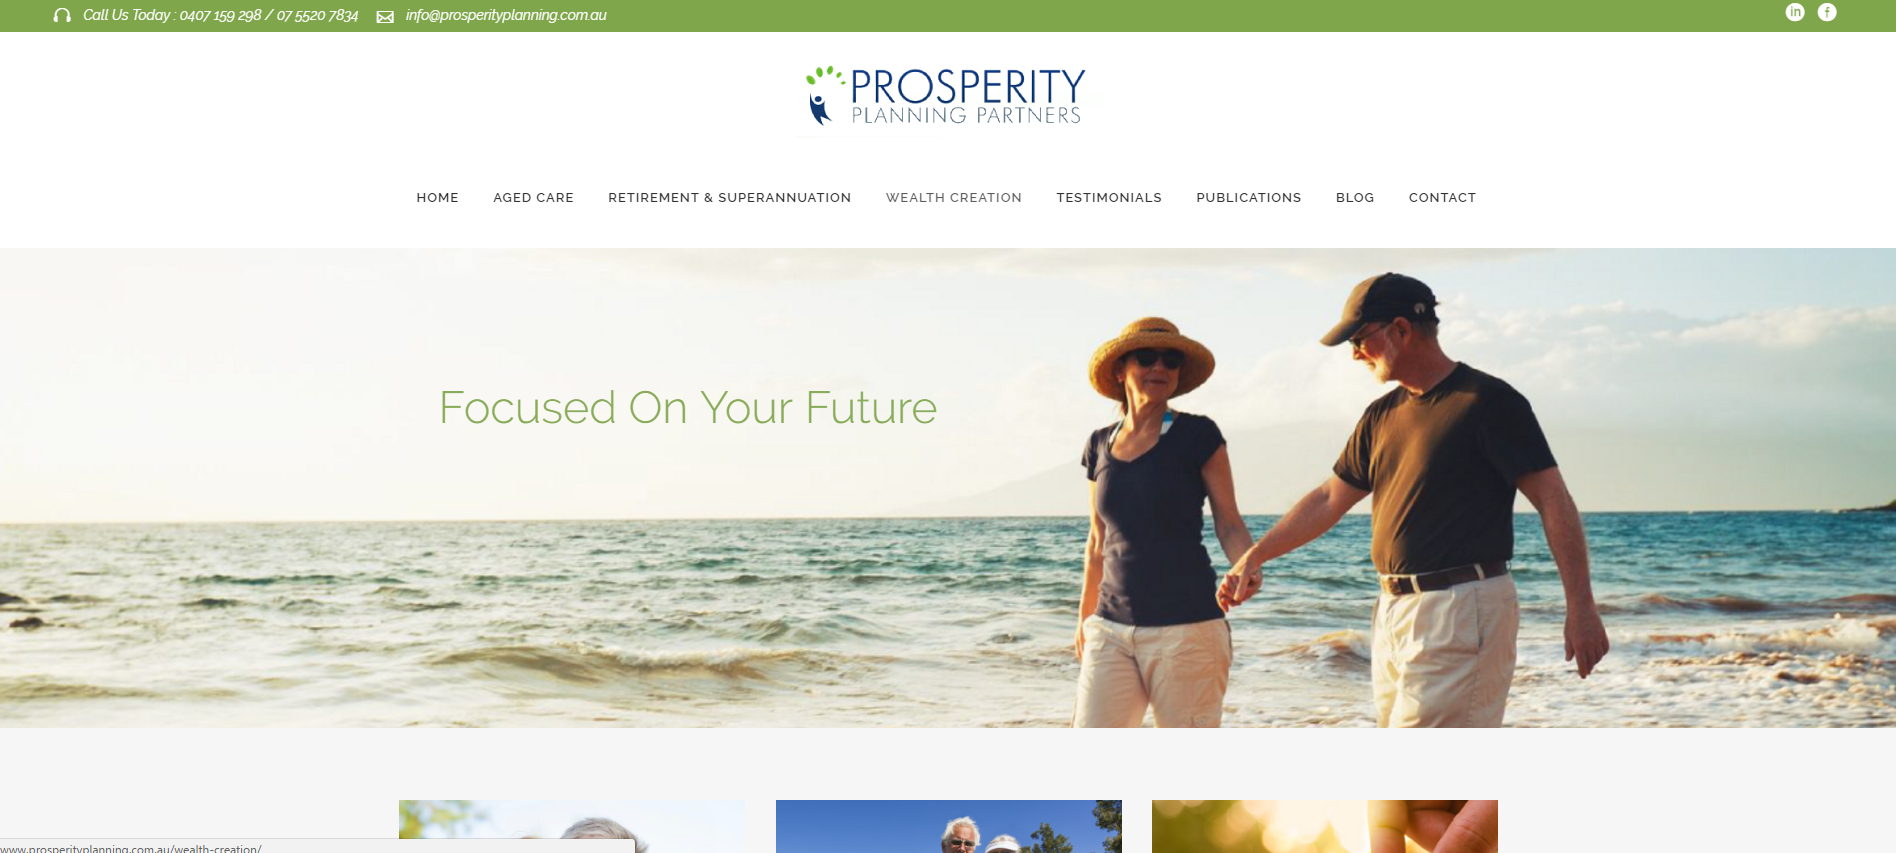 Prosperity Planning Partners Website www.prosperityplanning.com.au